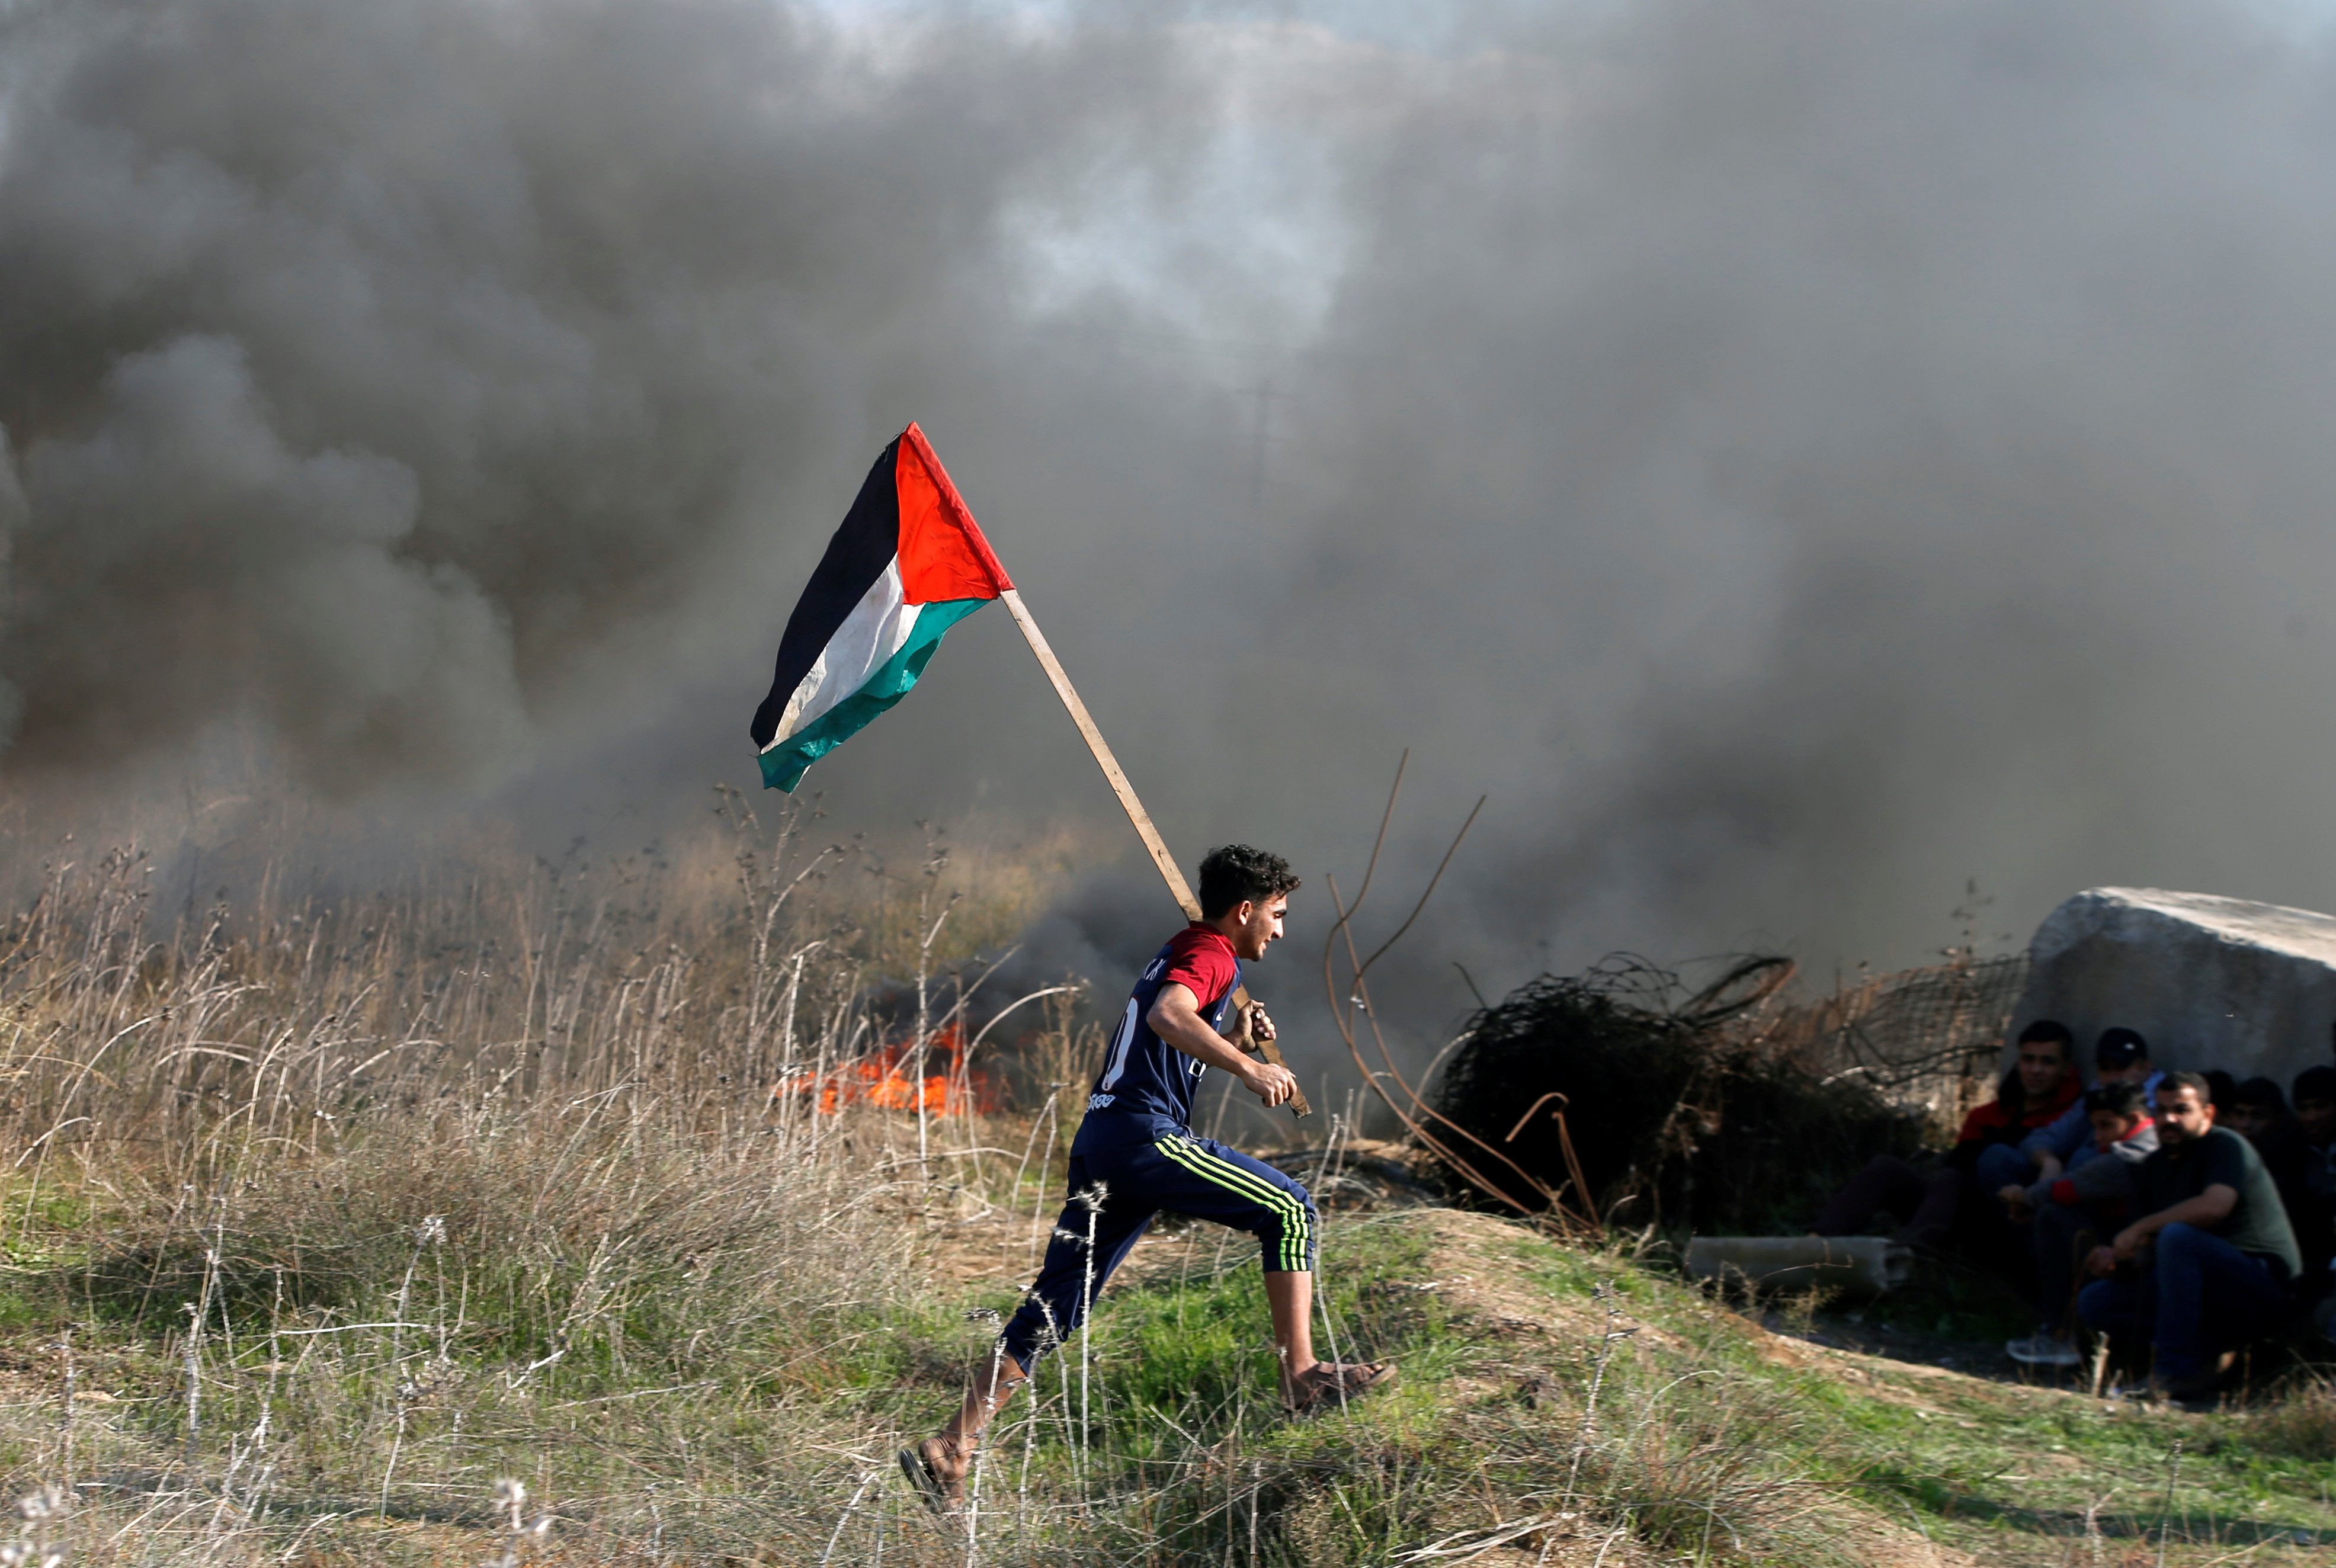   صور| إصابة 4 فلسطينيين بالرصاص الحى و9 بالمطاطى فى مسيرات بالقدس